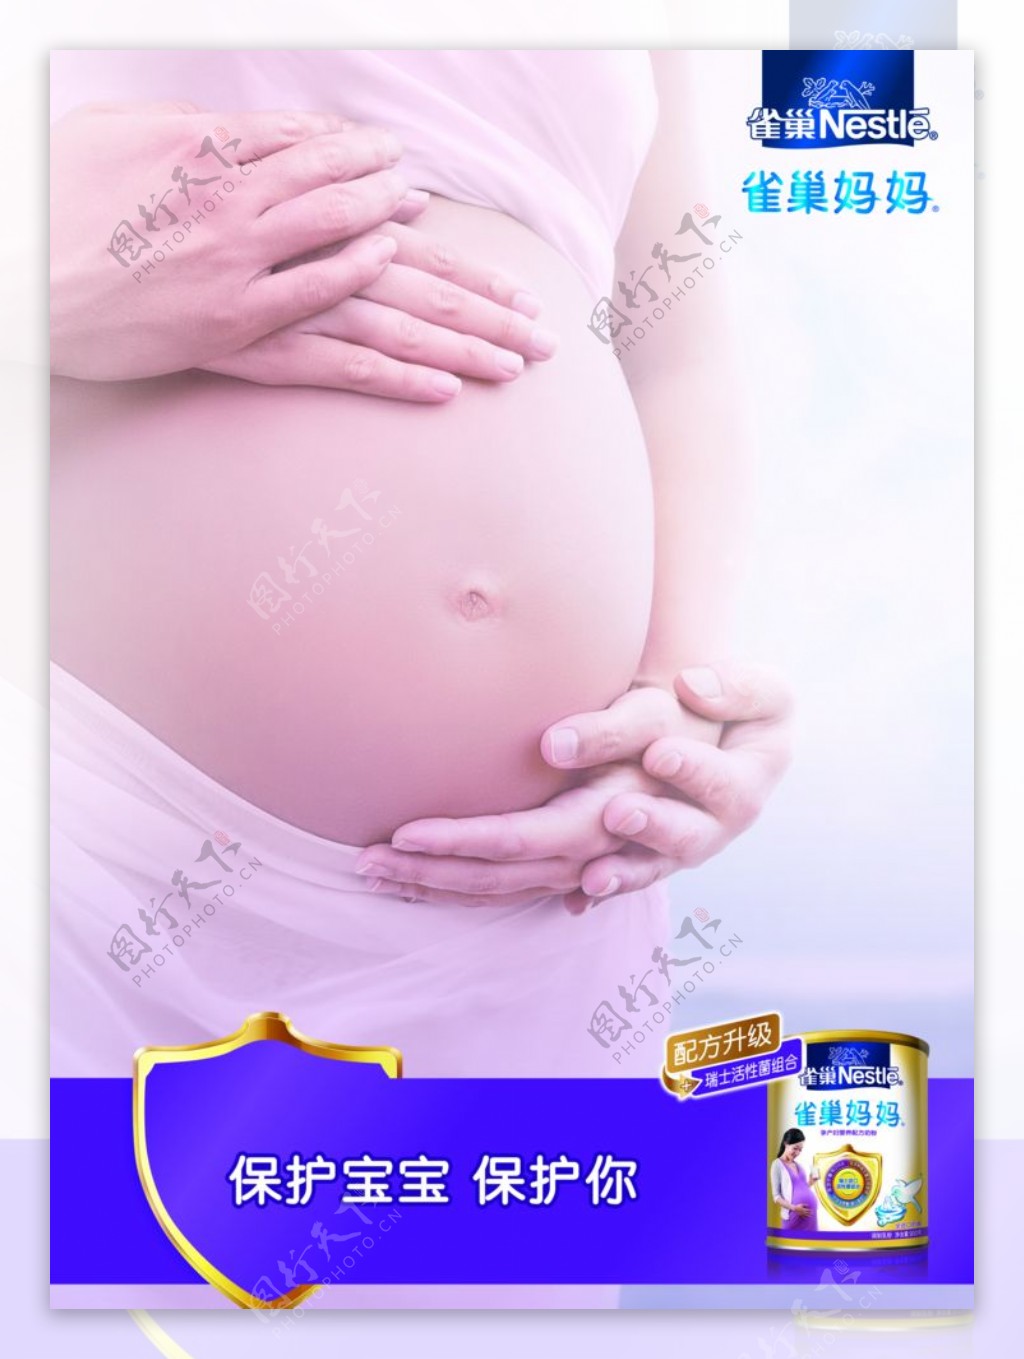 雀巢妈妈奶粉广告图片